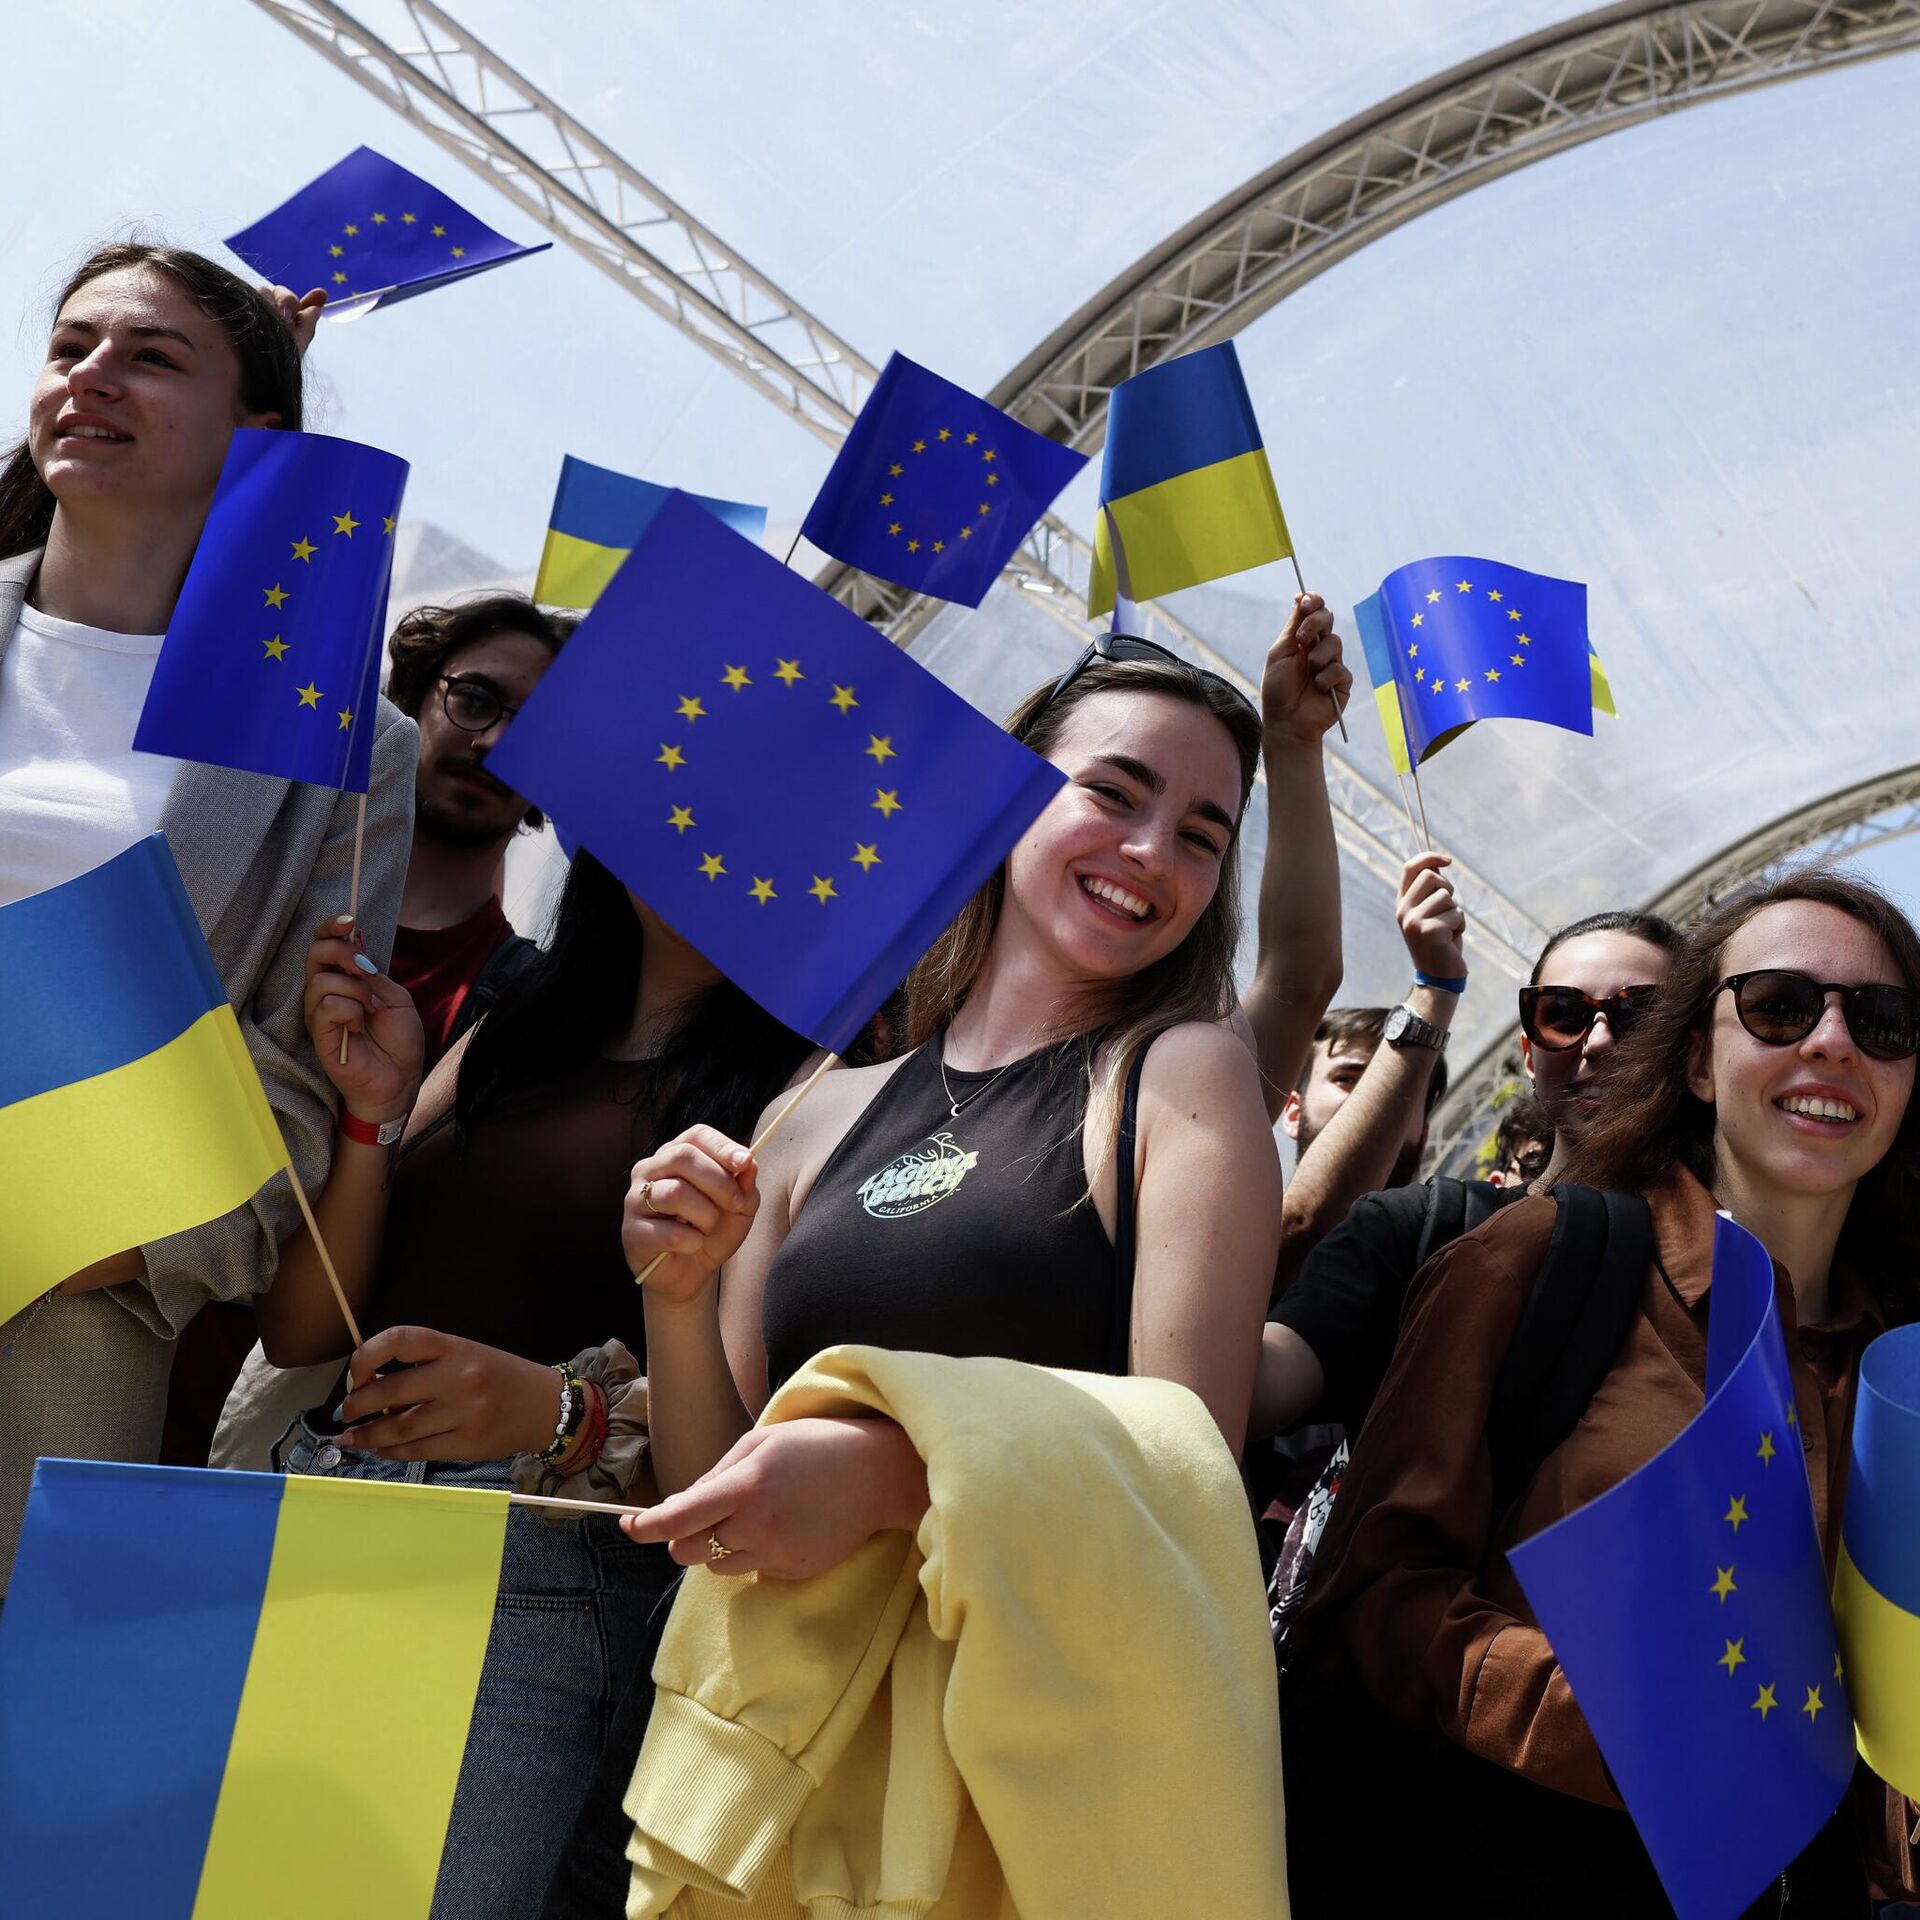 Претендент украины. Украина Евросоюз. Украина и Европейский Союз. Евросоюз люди. Девушки Евросоюза.